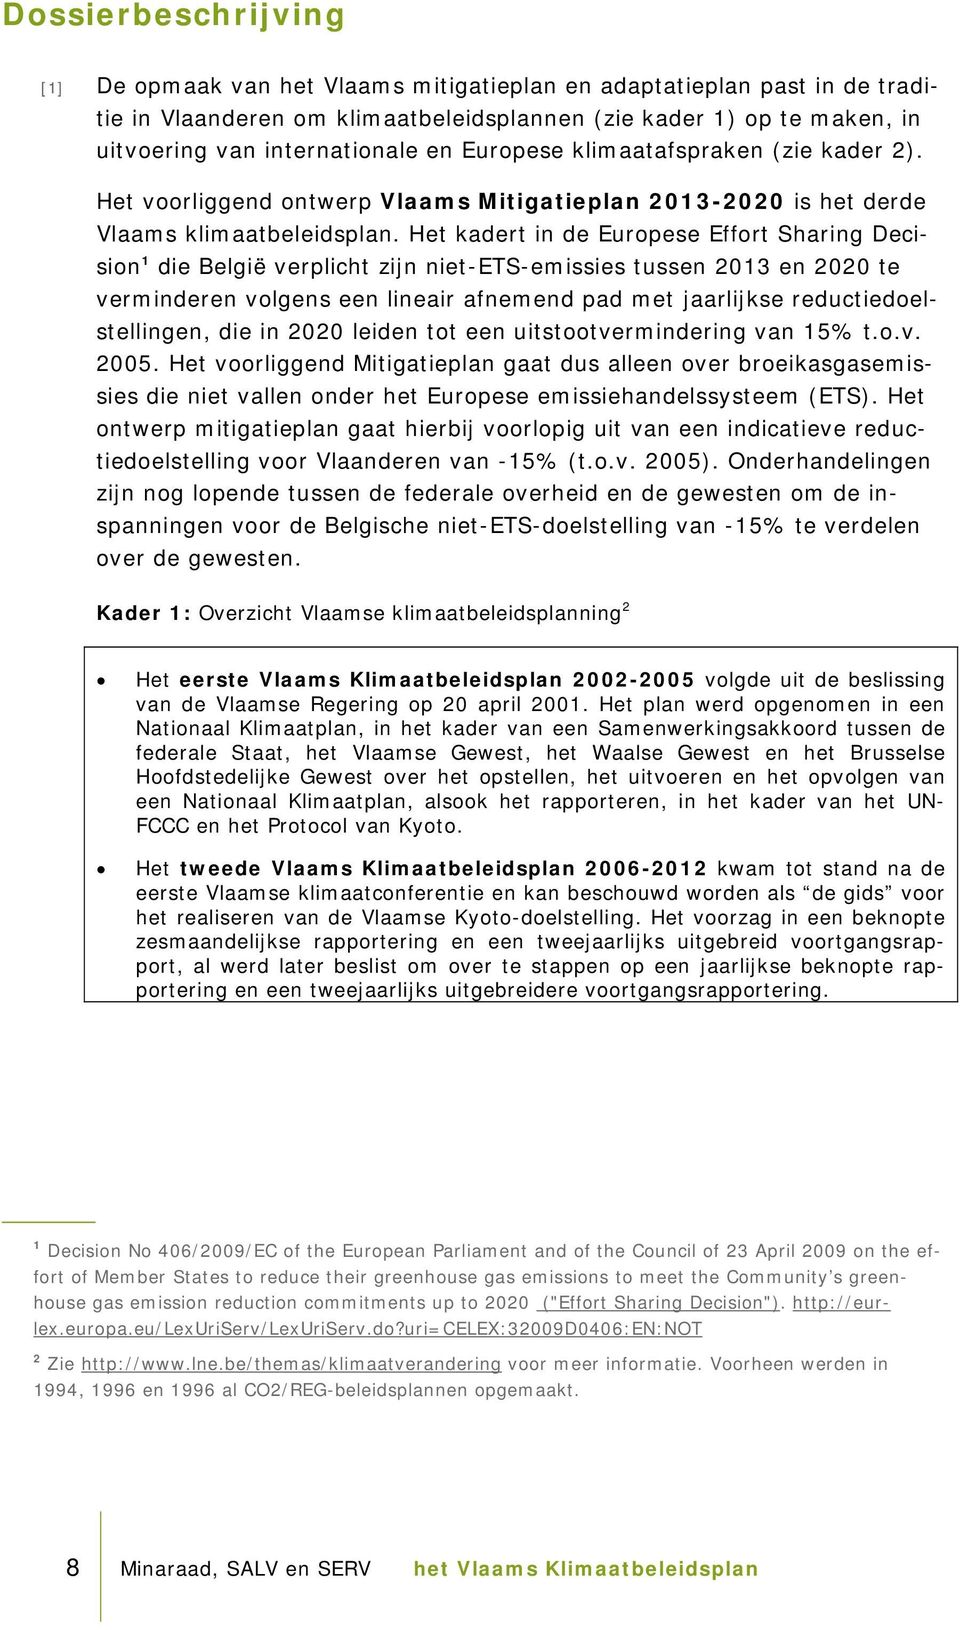 Het kadert in de Europese Effort Sharing Decision 1 die België verplicht zijn niet-ets-emissies tussen 2013 en 2020 te verminderen volgens een lineair afnemend pad met jaarlijkse